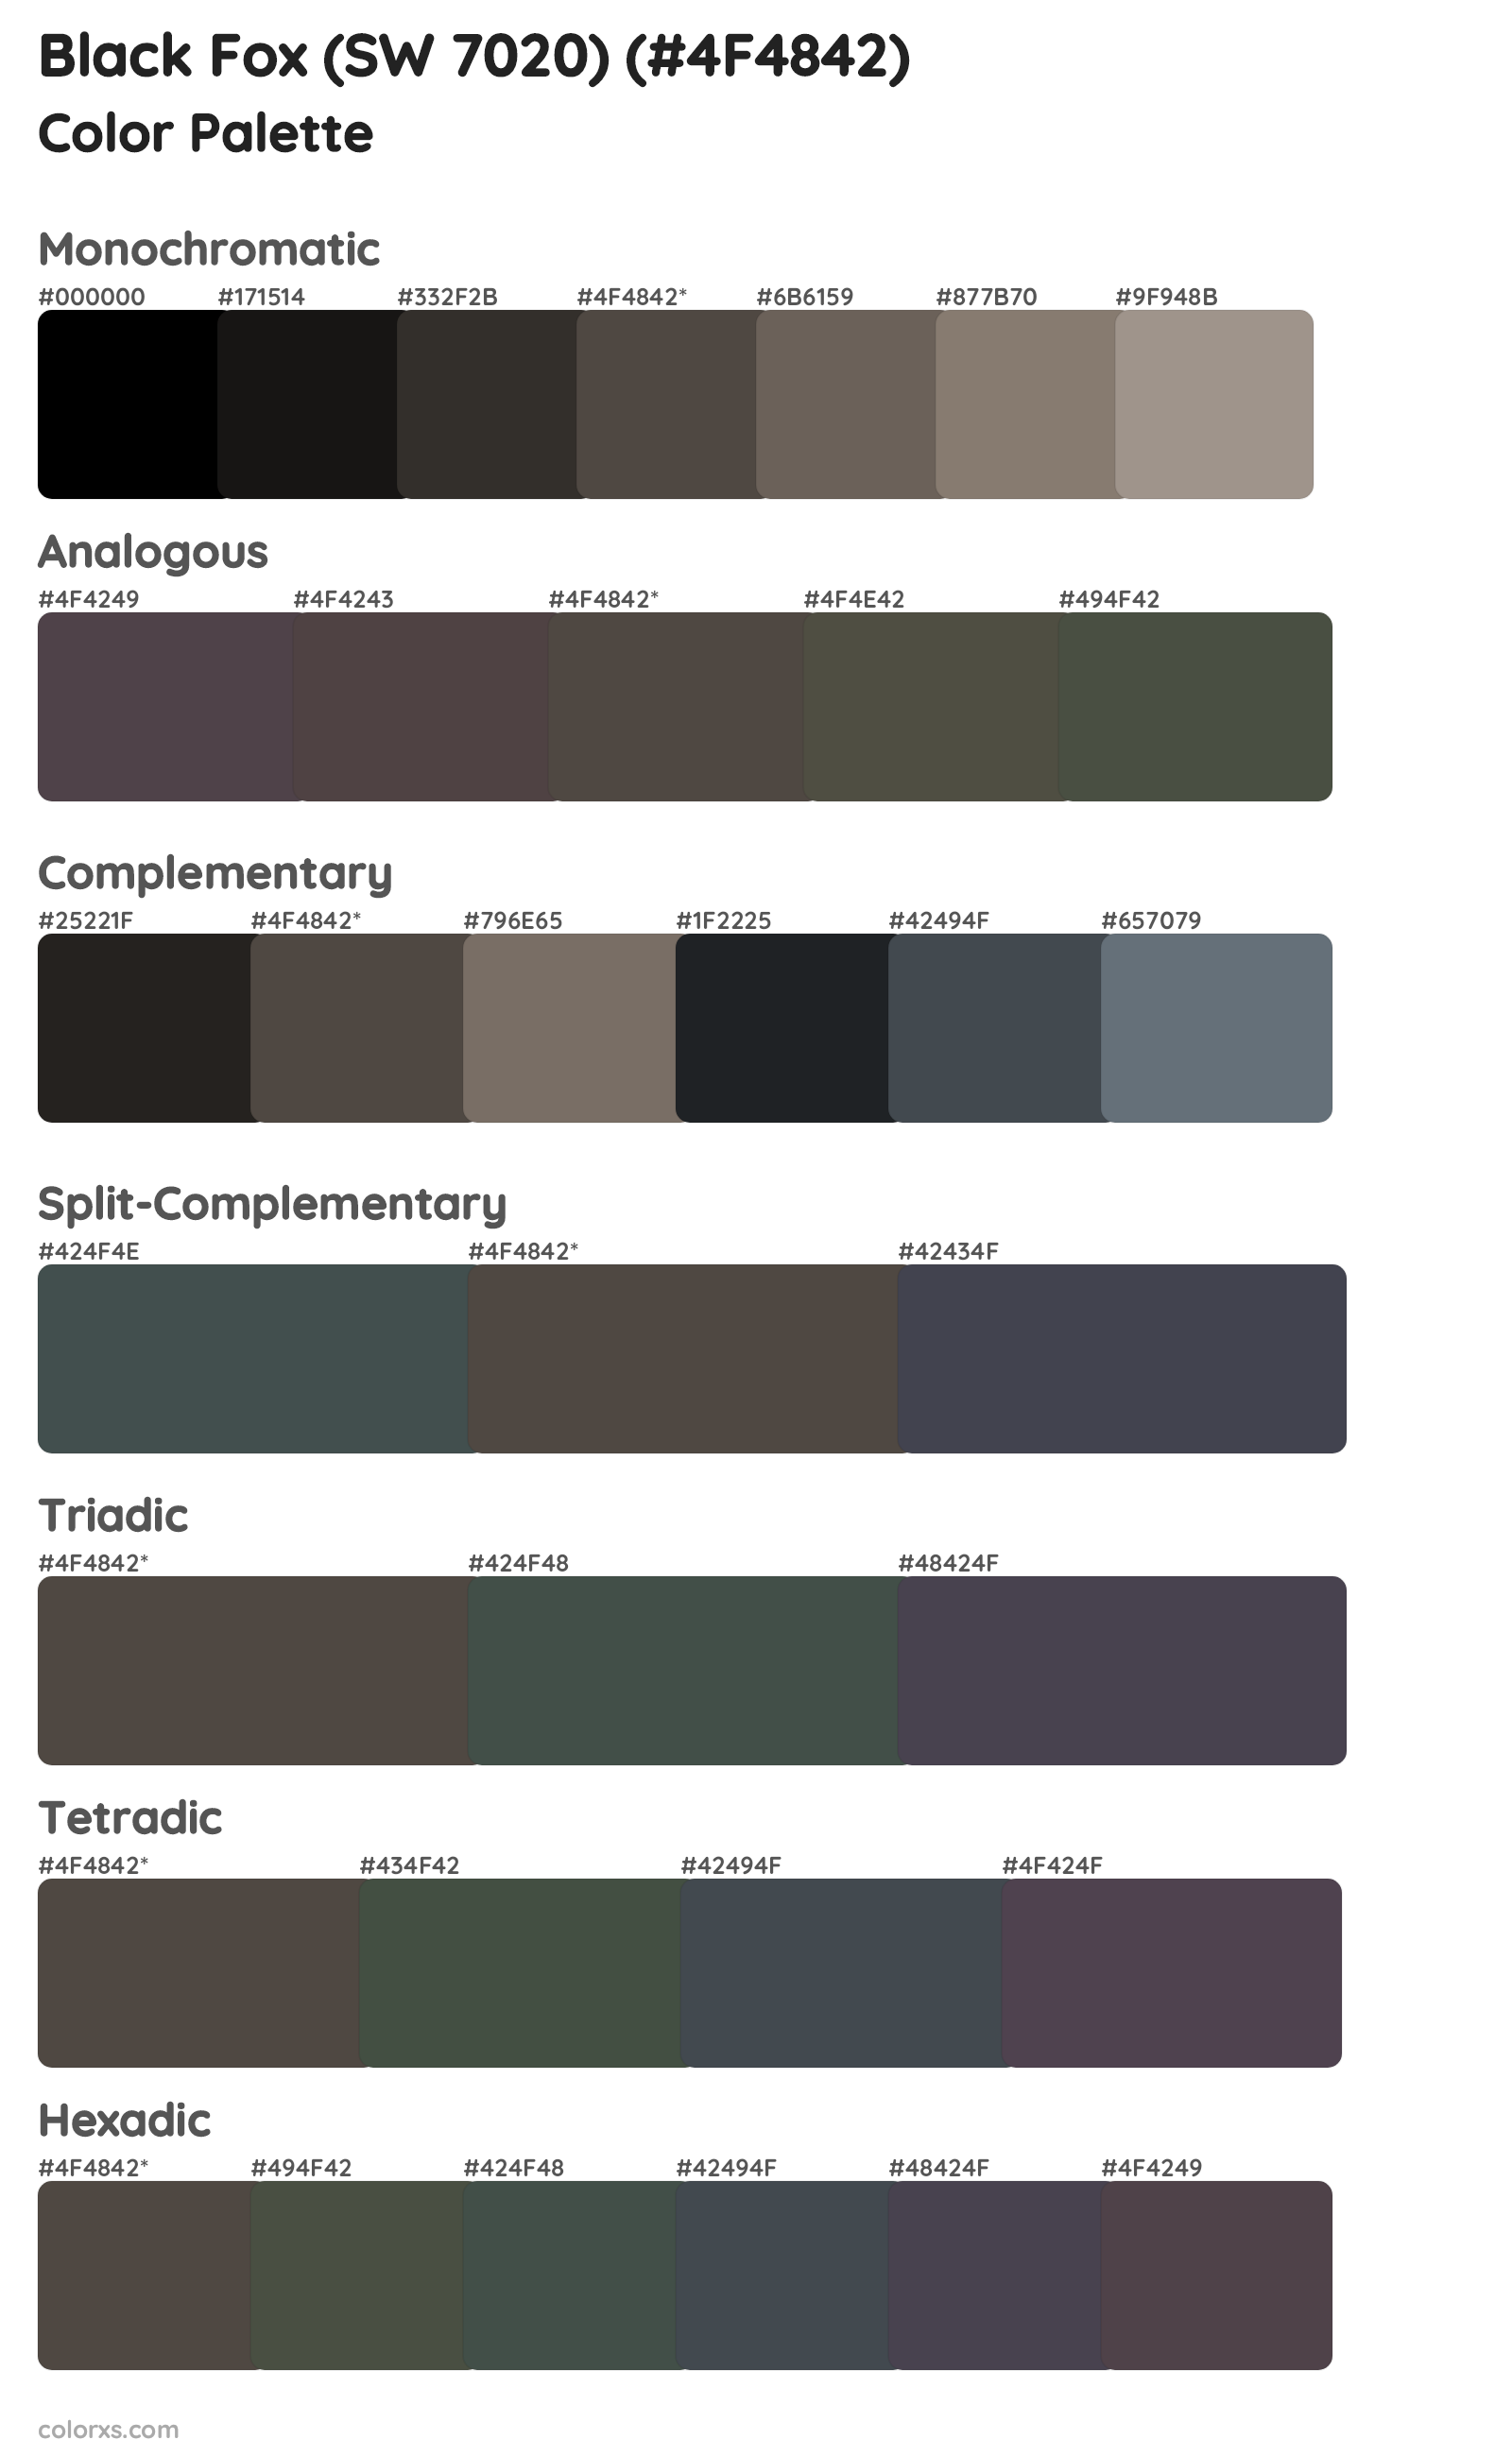 Black Fox (SW 7020) Color Scheme Palettes